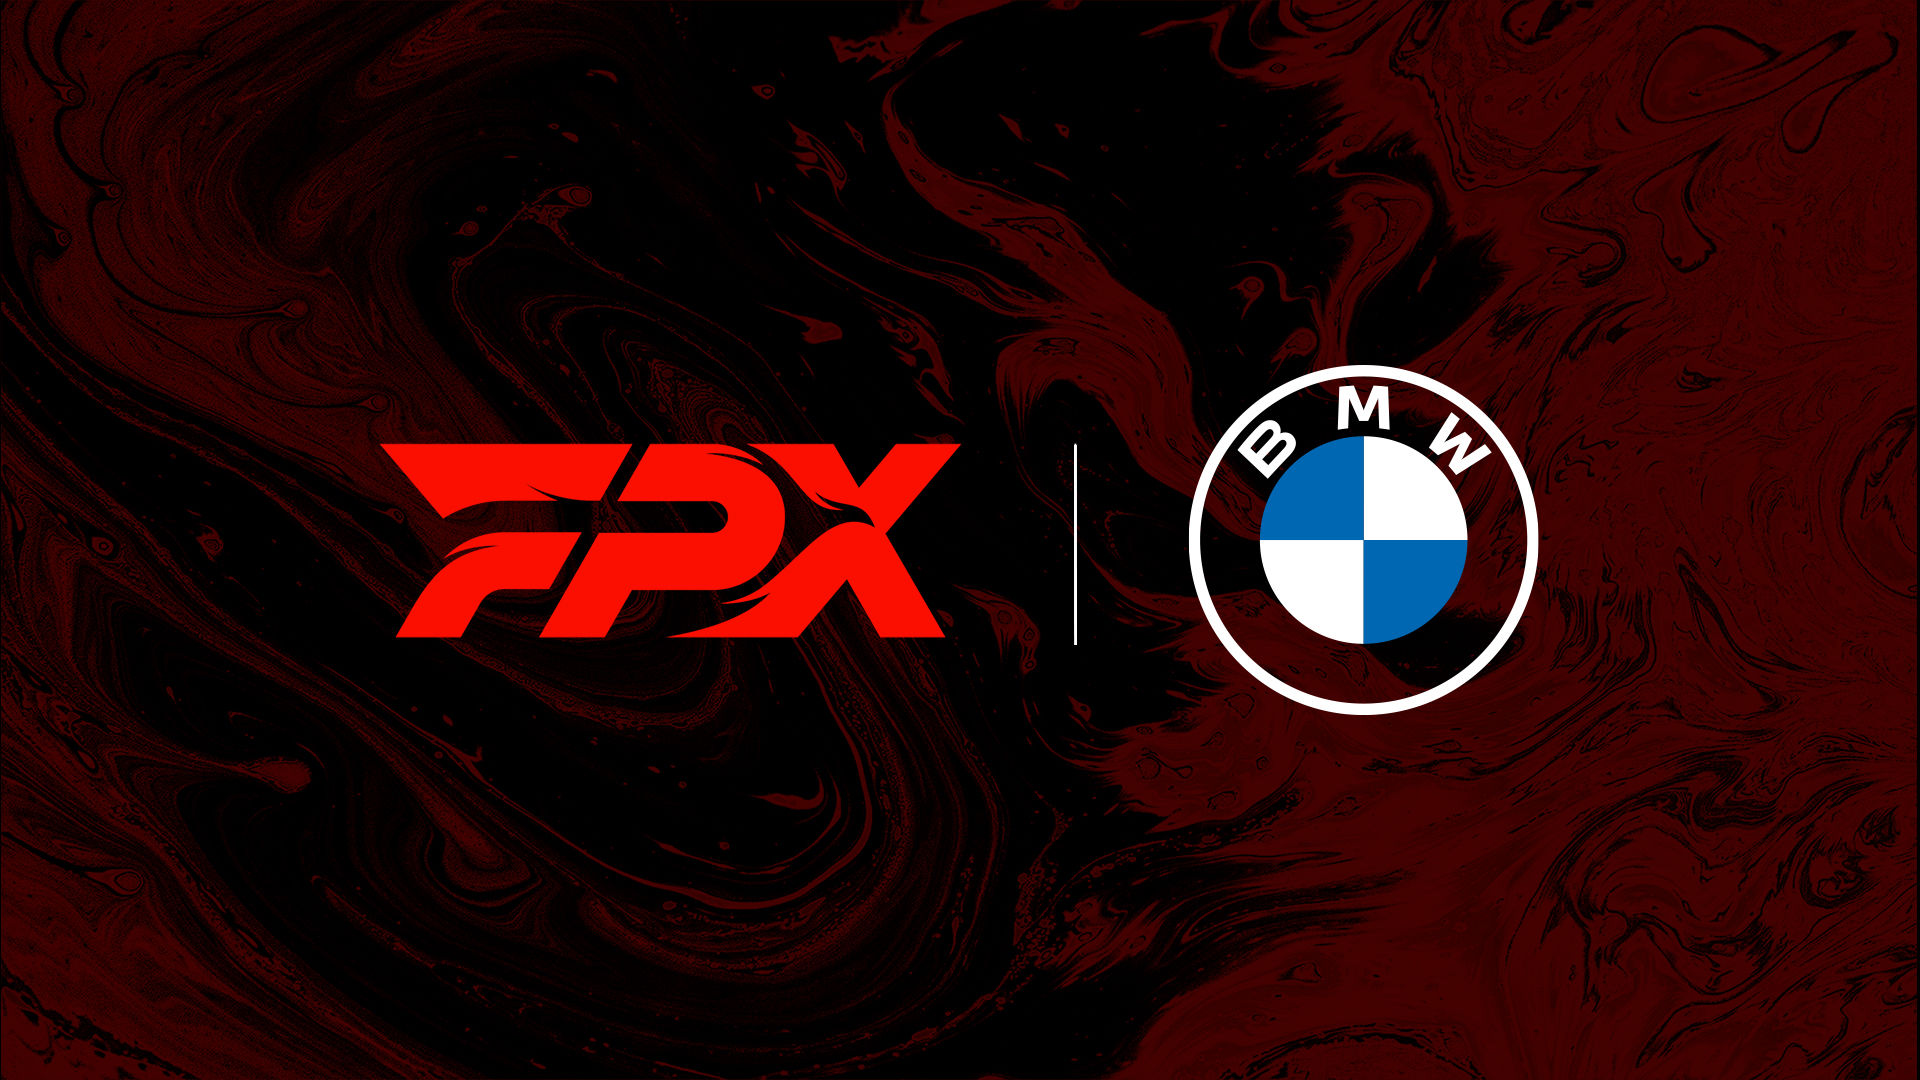 BMW стала титульным спонсором FPX